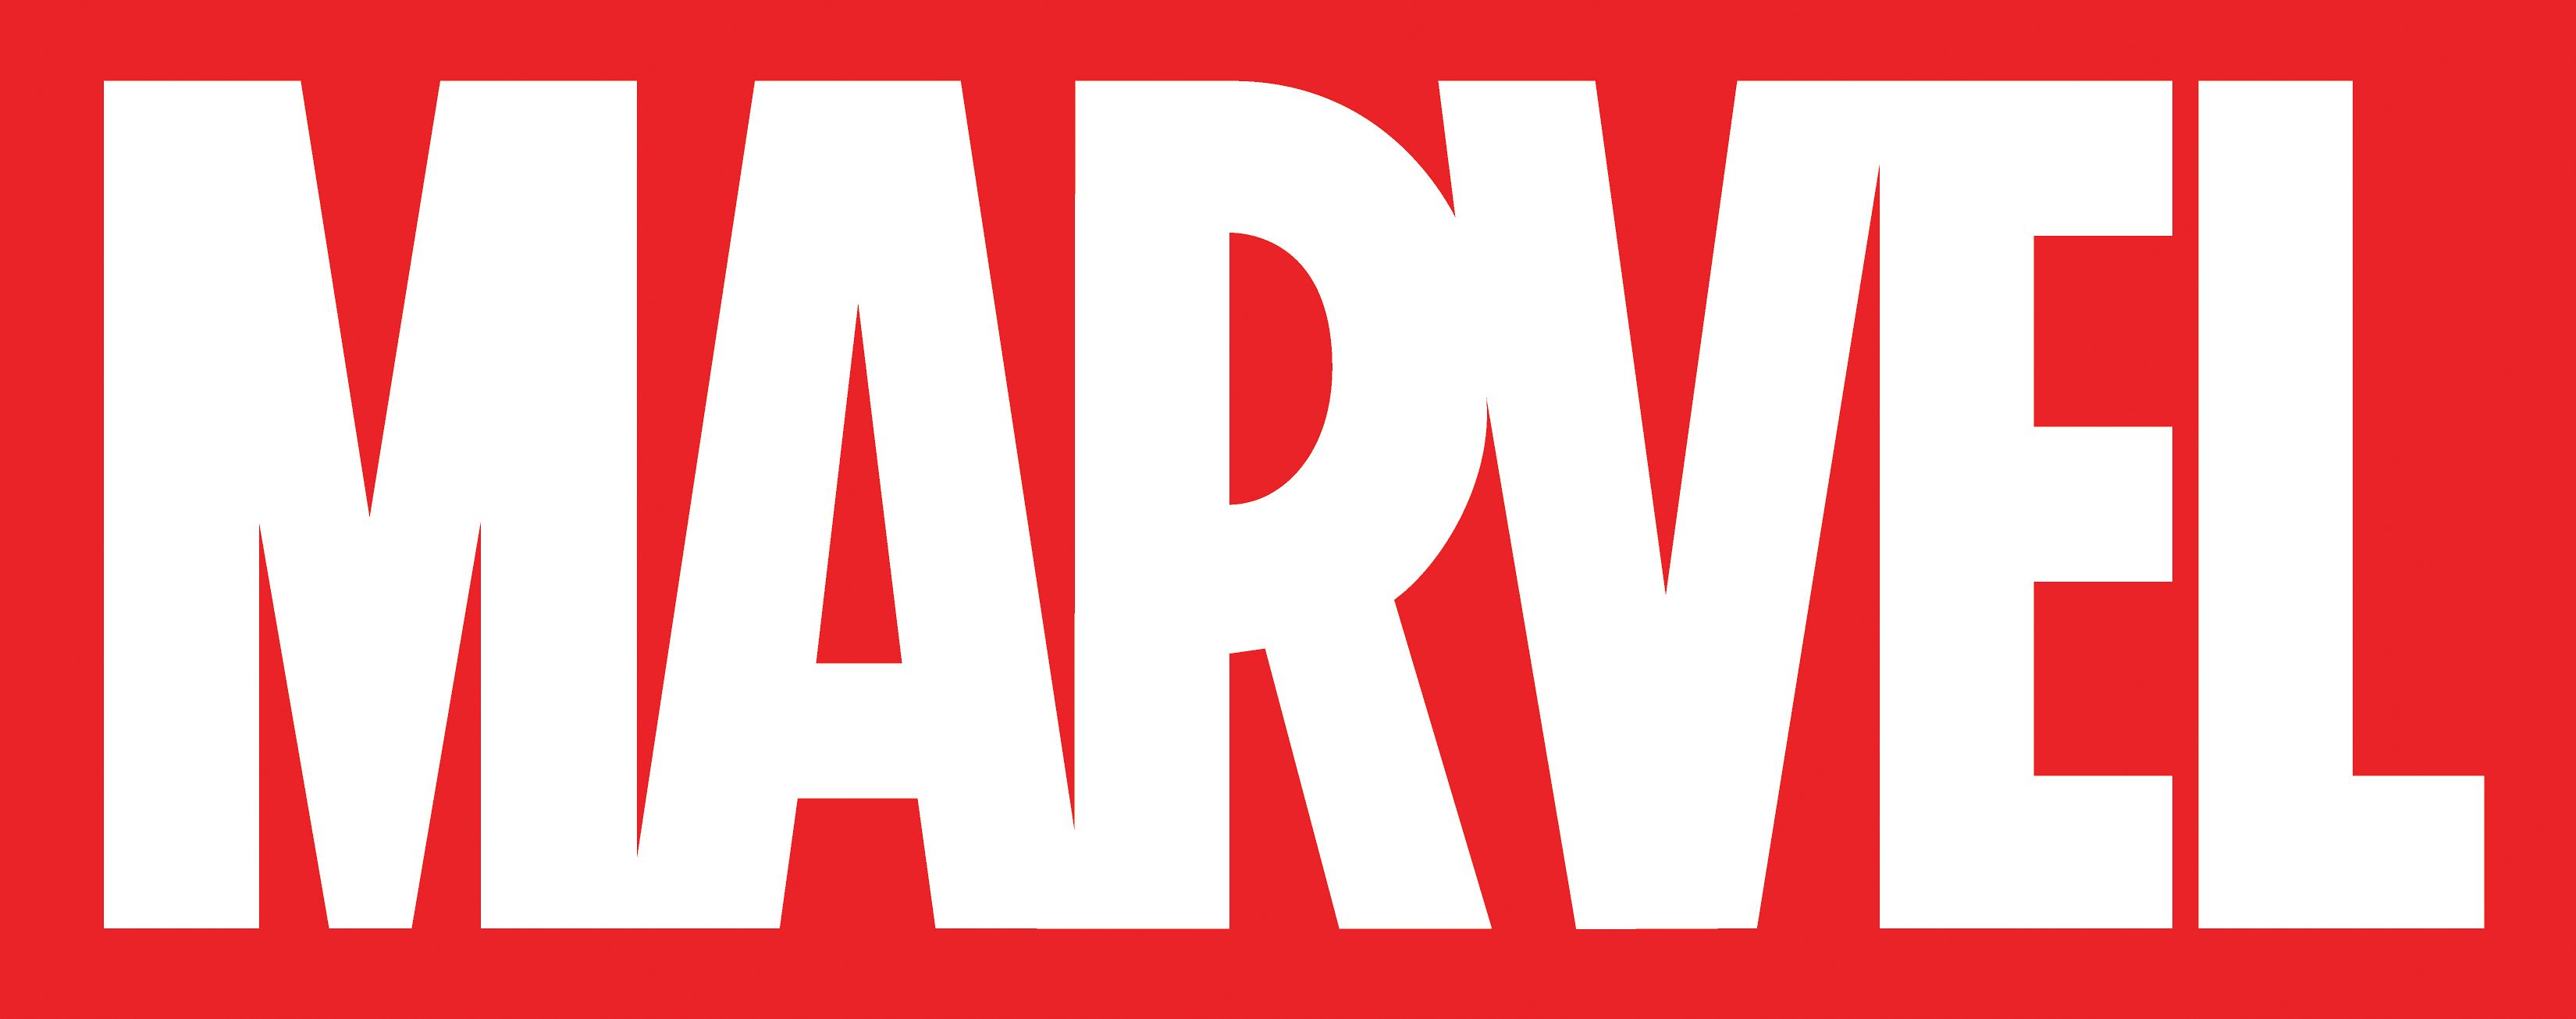 Marvel Logo Wallpapers 4k Hd Marvel Logo Backgrounds On Wallpaperbat